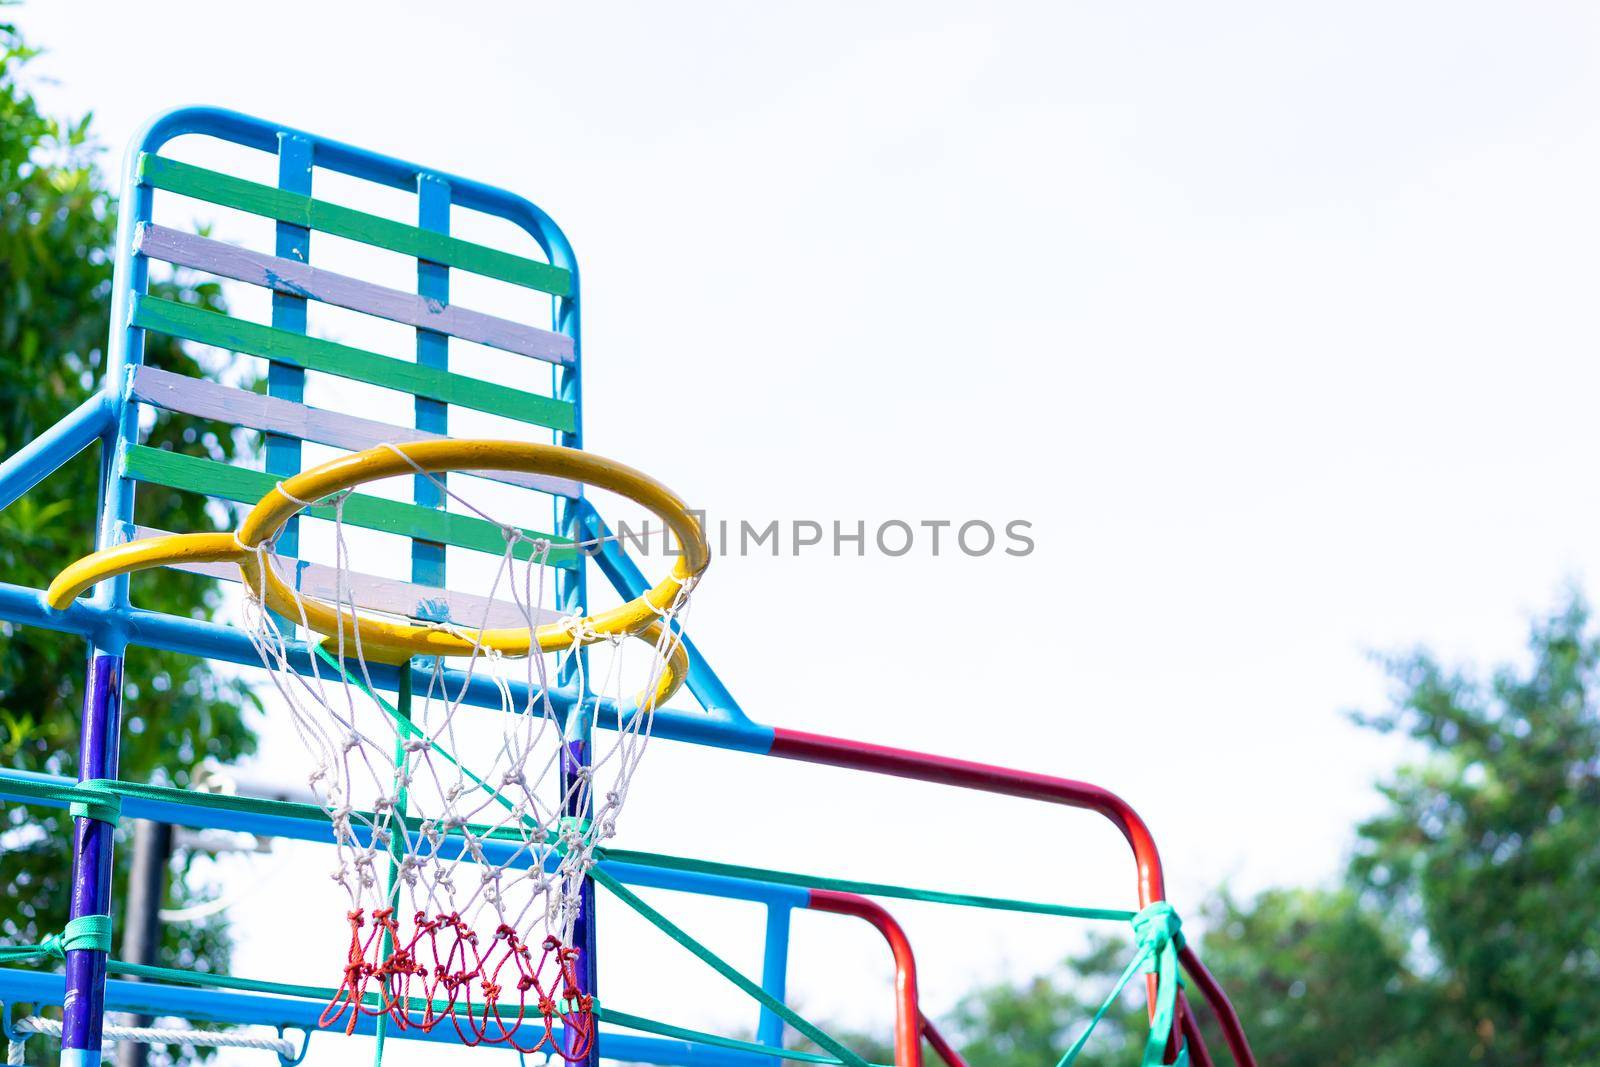 Basketball hoop in the park by domonite